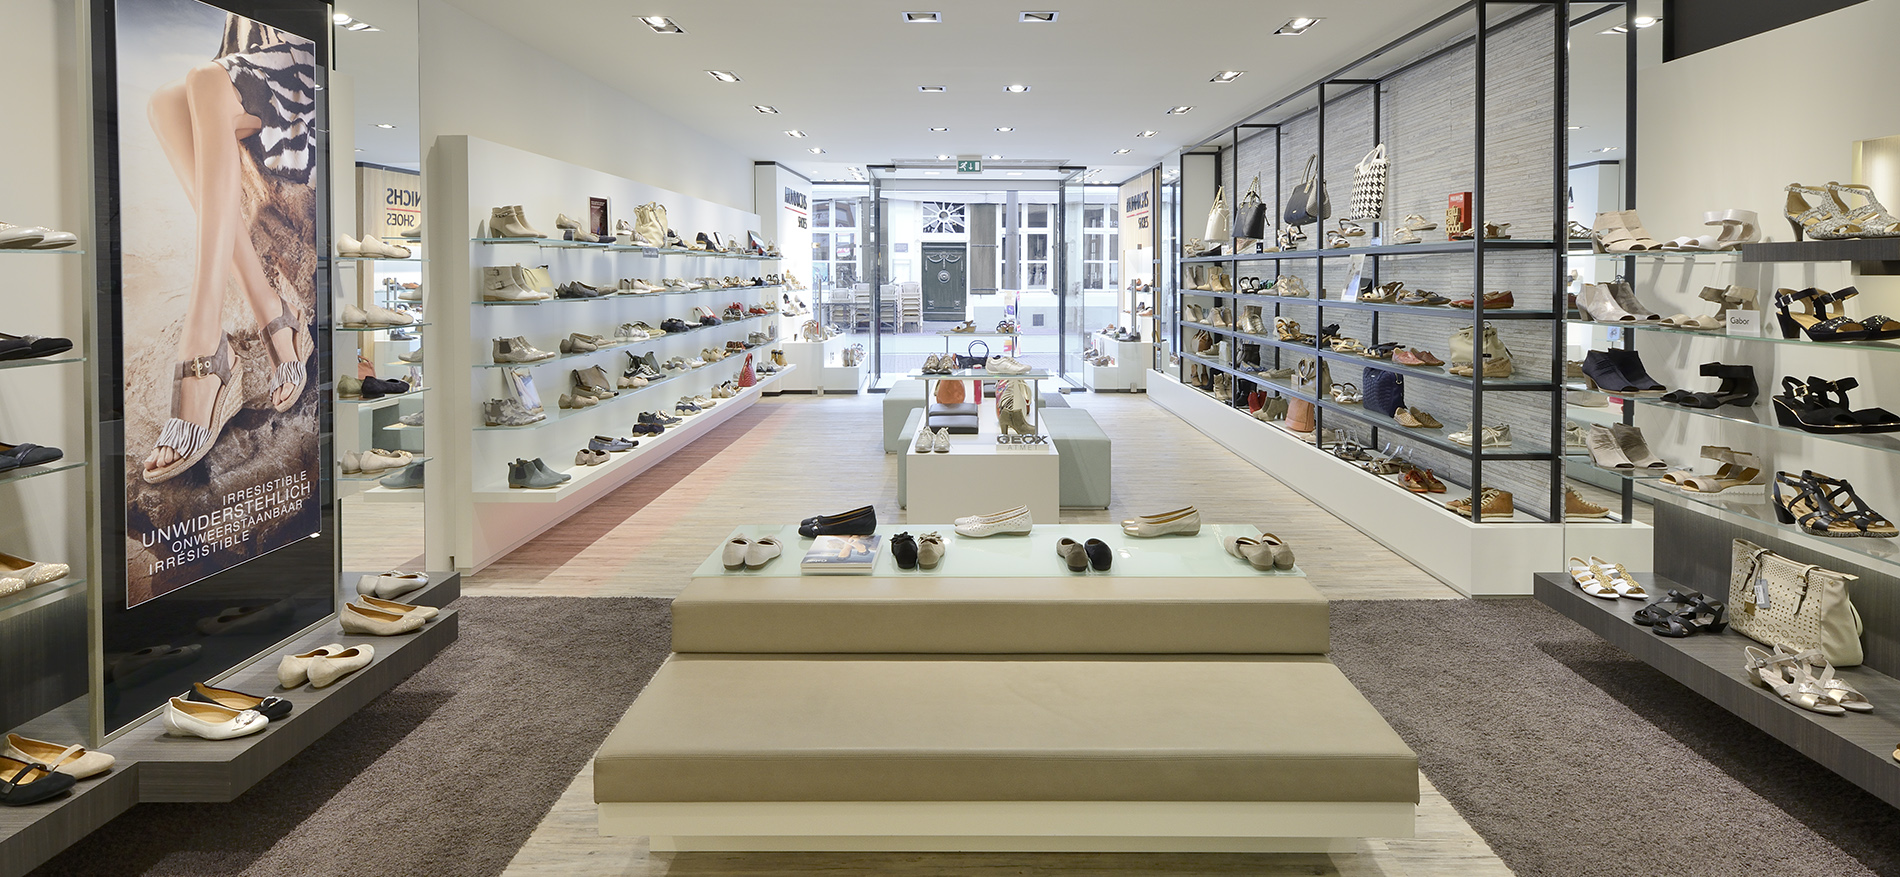 Retail Design of Concept Munnichs Shoes - 